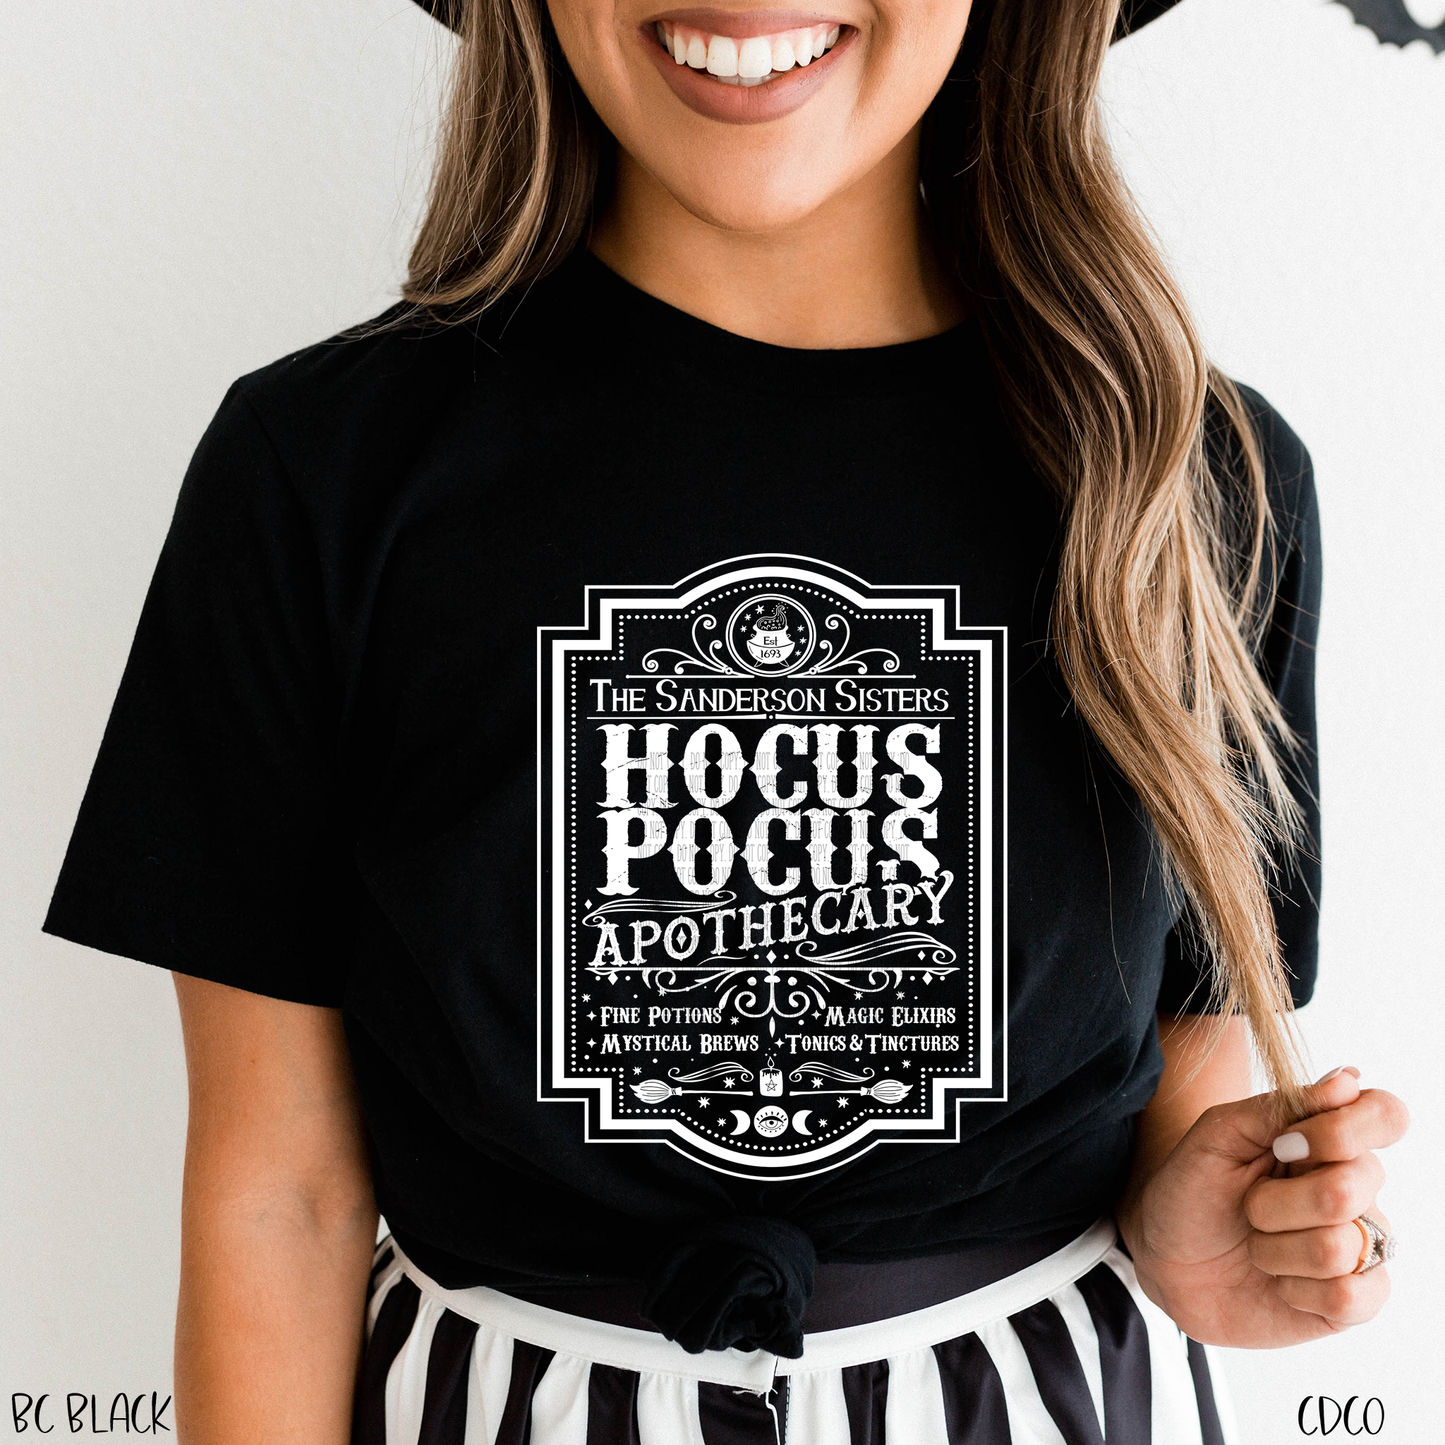 Hocus Pocus Apothecary Elixirs - White  (325°)